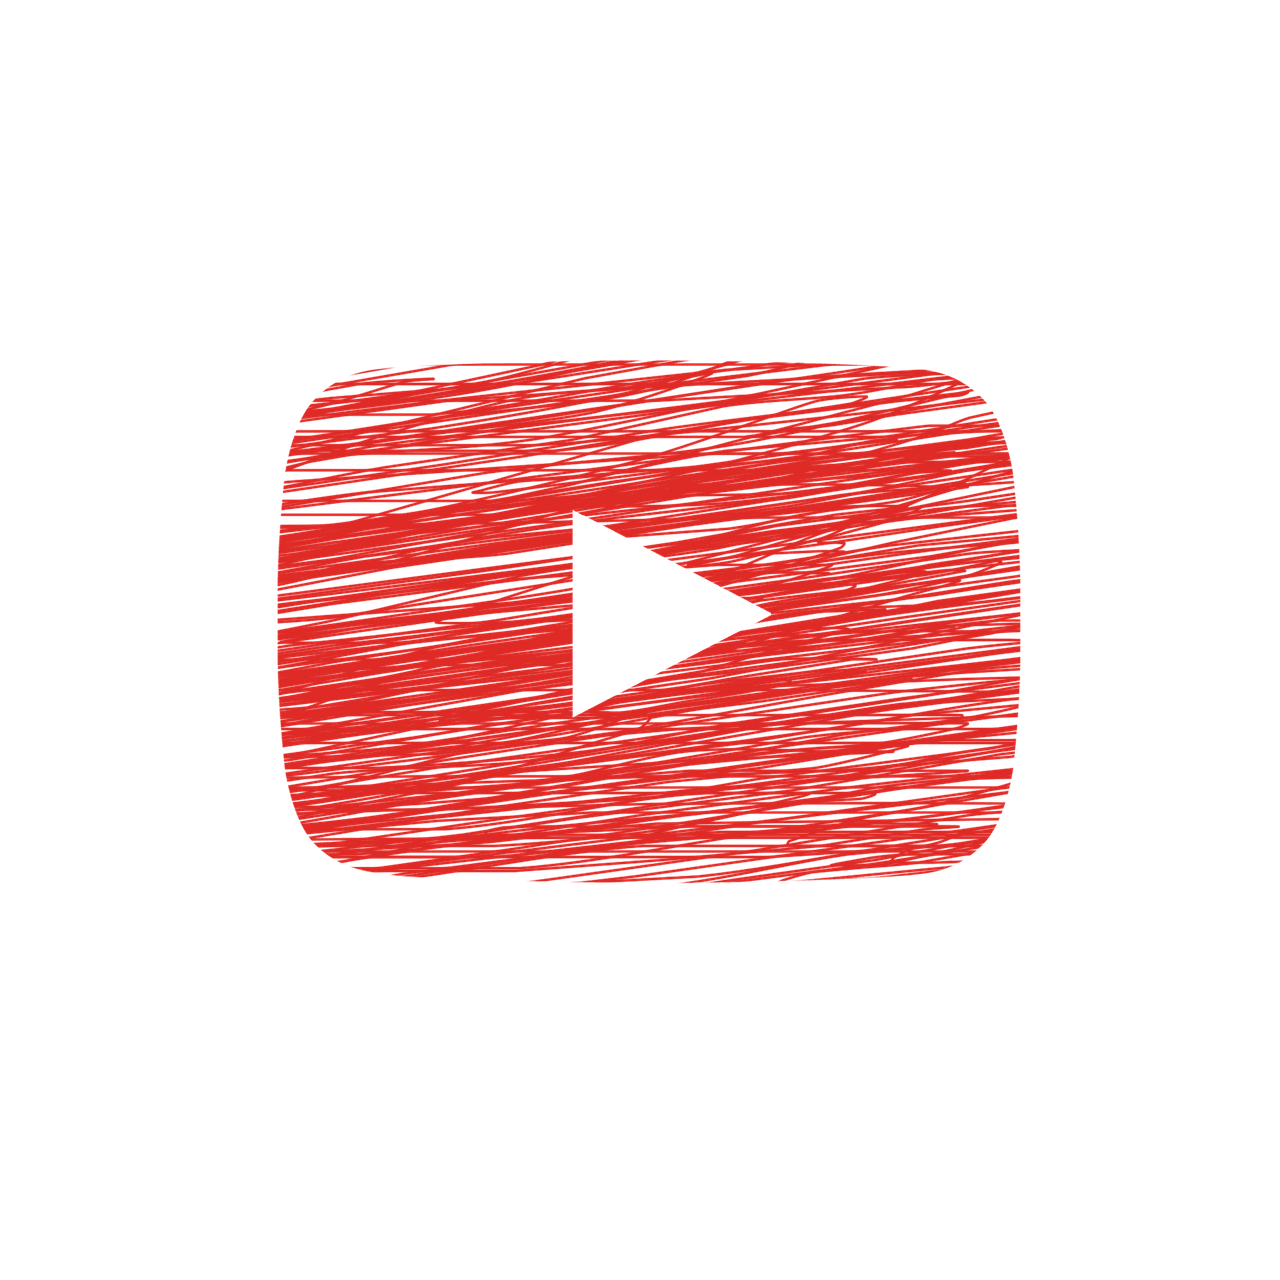  YouTube: meno pubblicità nei video per i bimbi